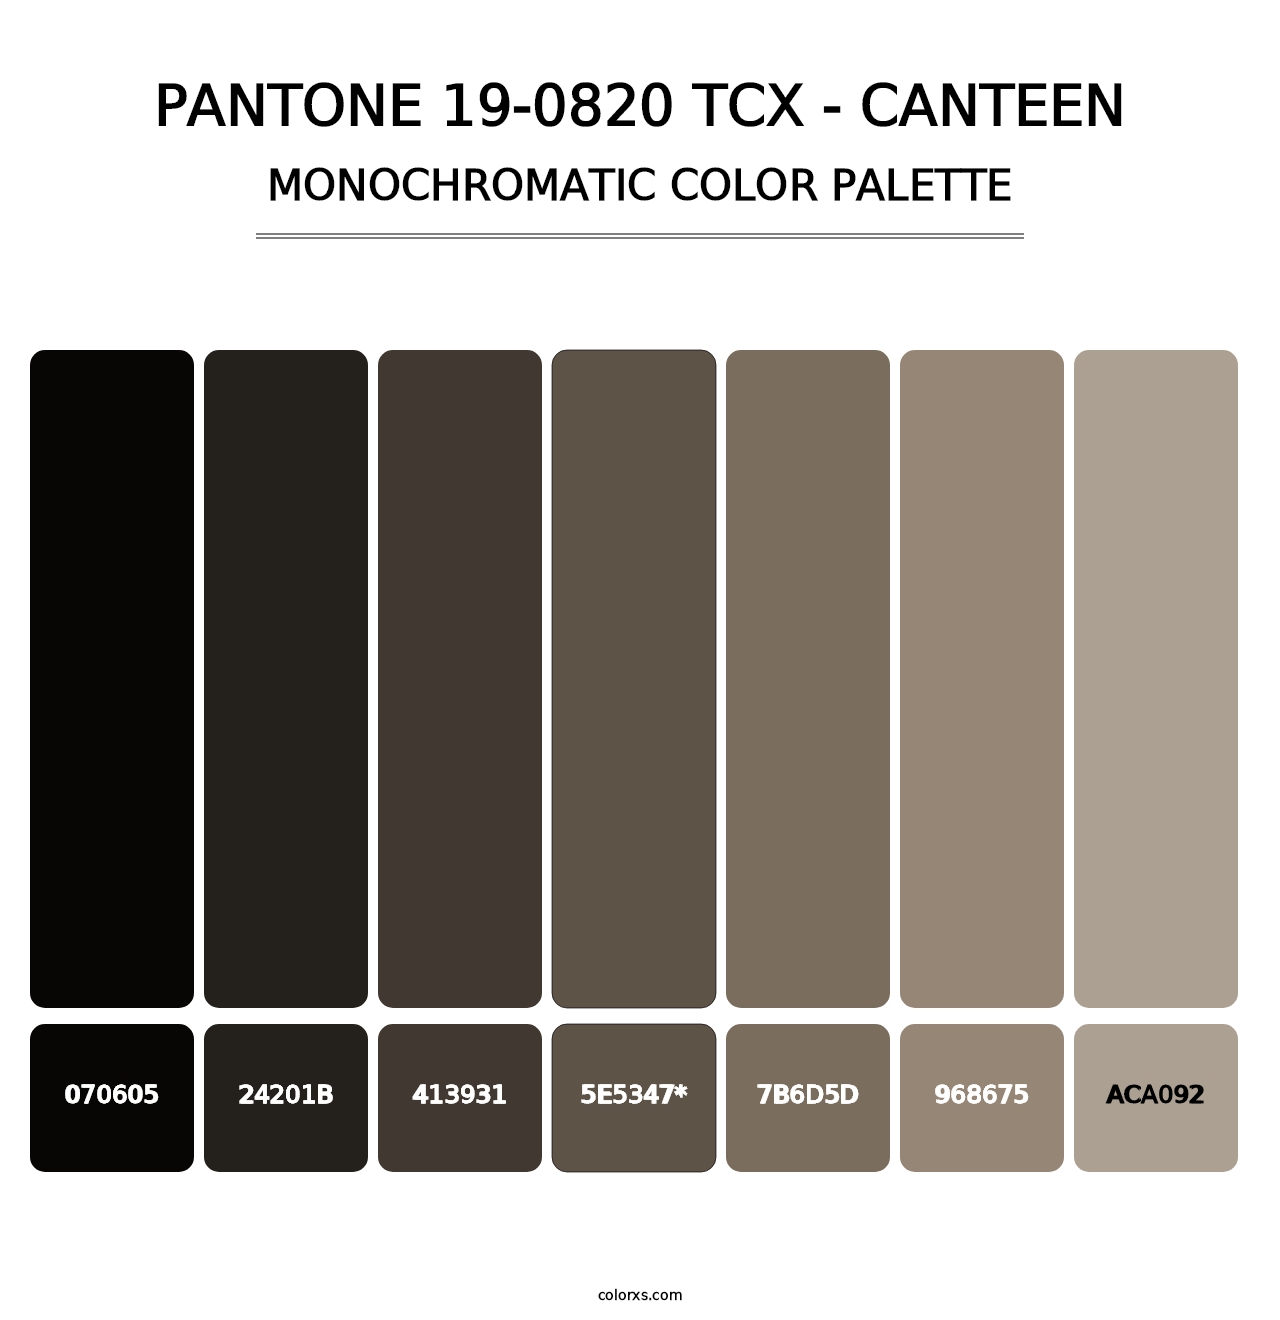 PANTONE 19-0820 TCX - Canteen - Monochromatic Color Palette